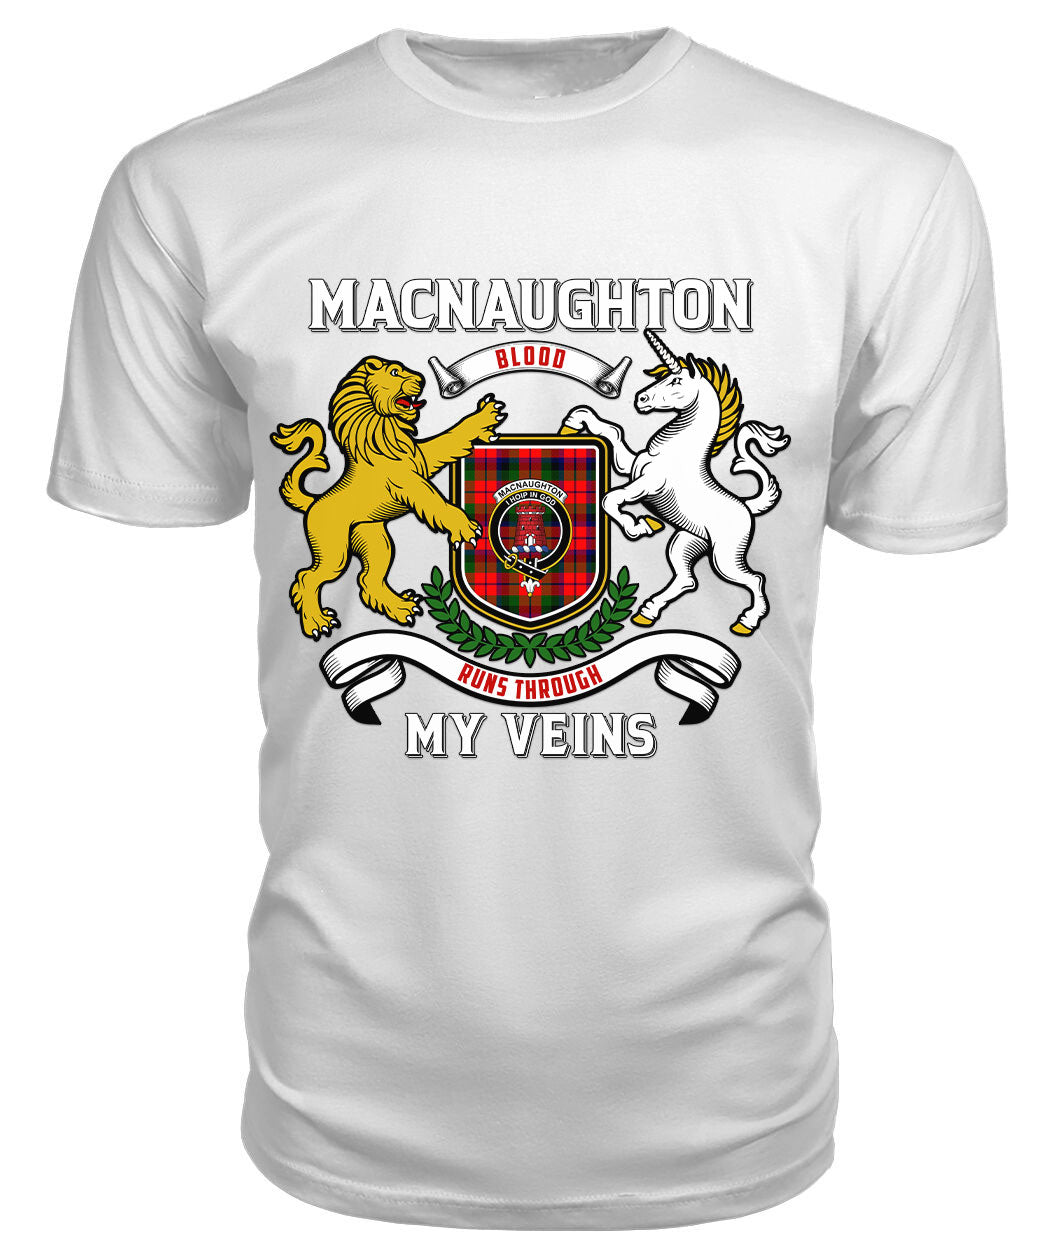 MacNaughton Modern Tartan Crest 2D T-shirt - Blood Runs Through My Veins Style